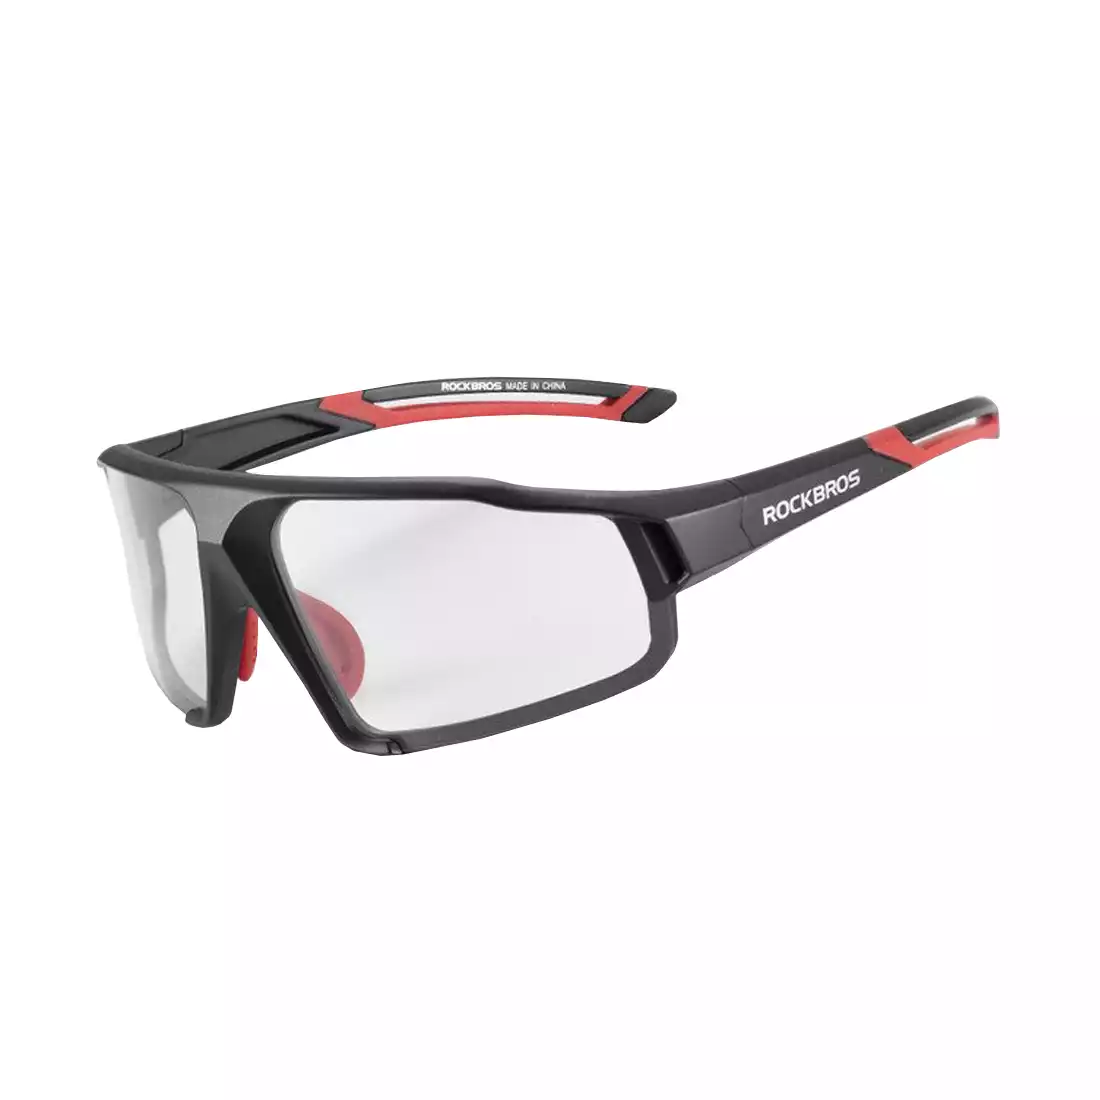 Rockbros SP216BK okulary rowerowe / sportowe z fotochromem czarny-czerwony